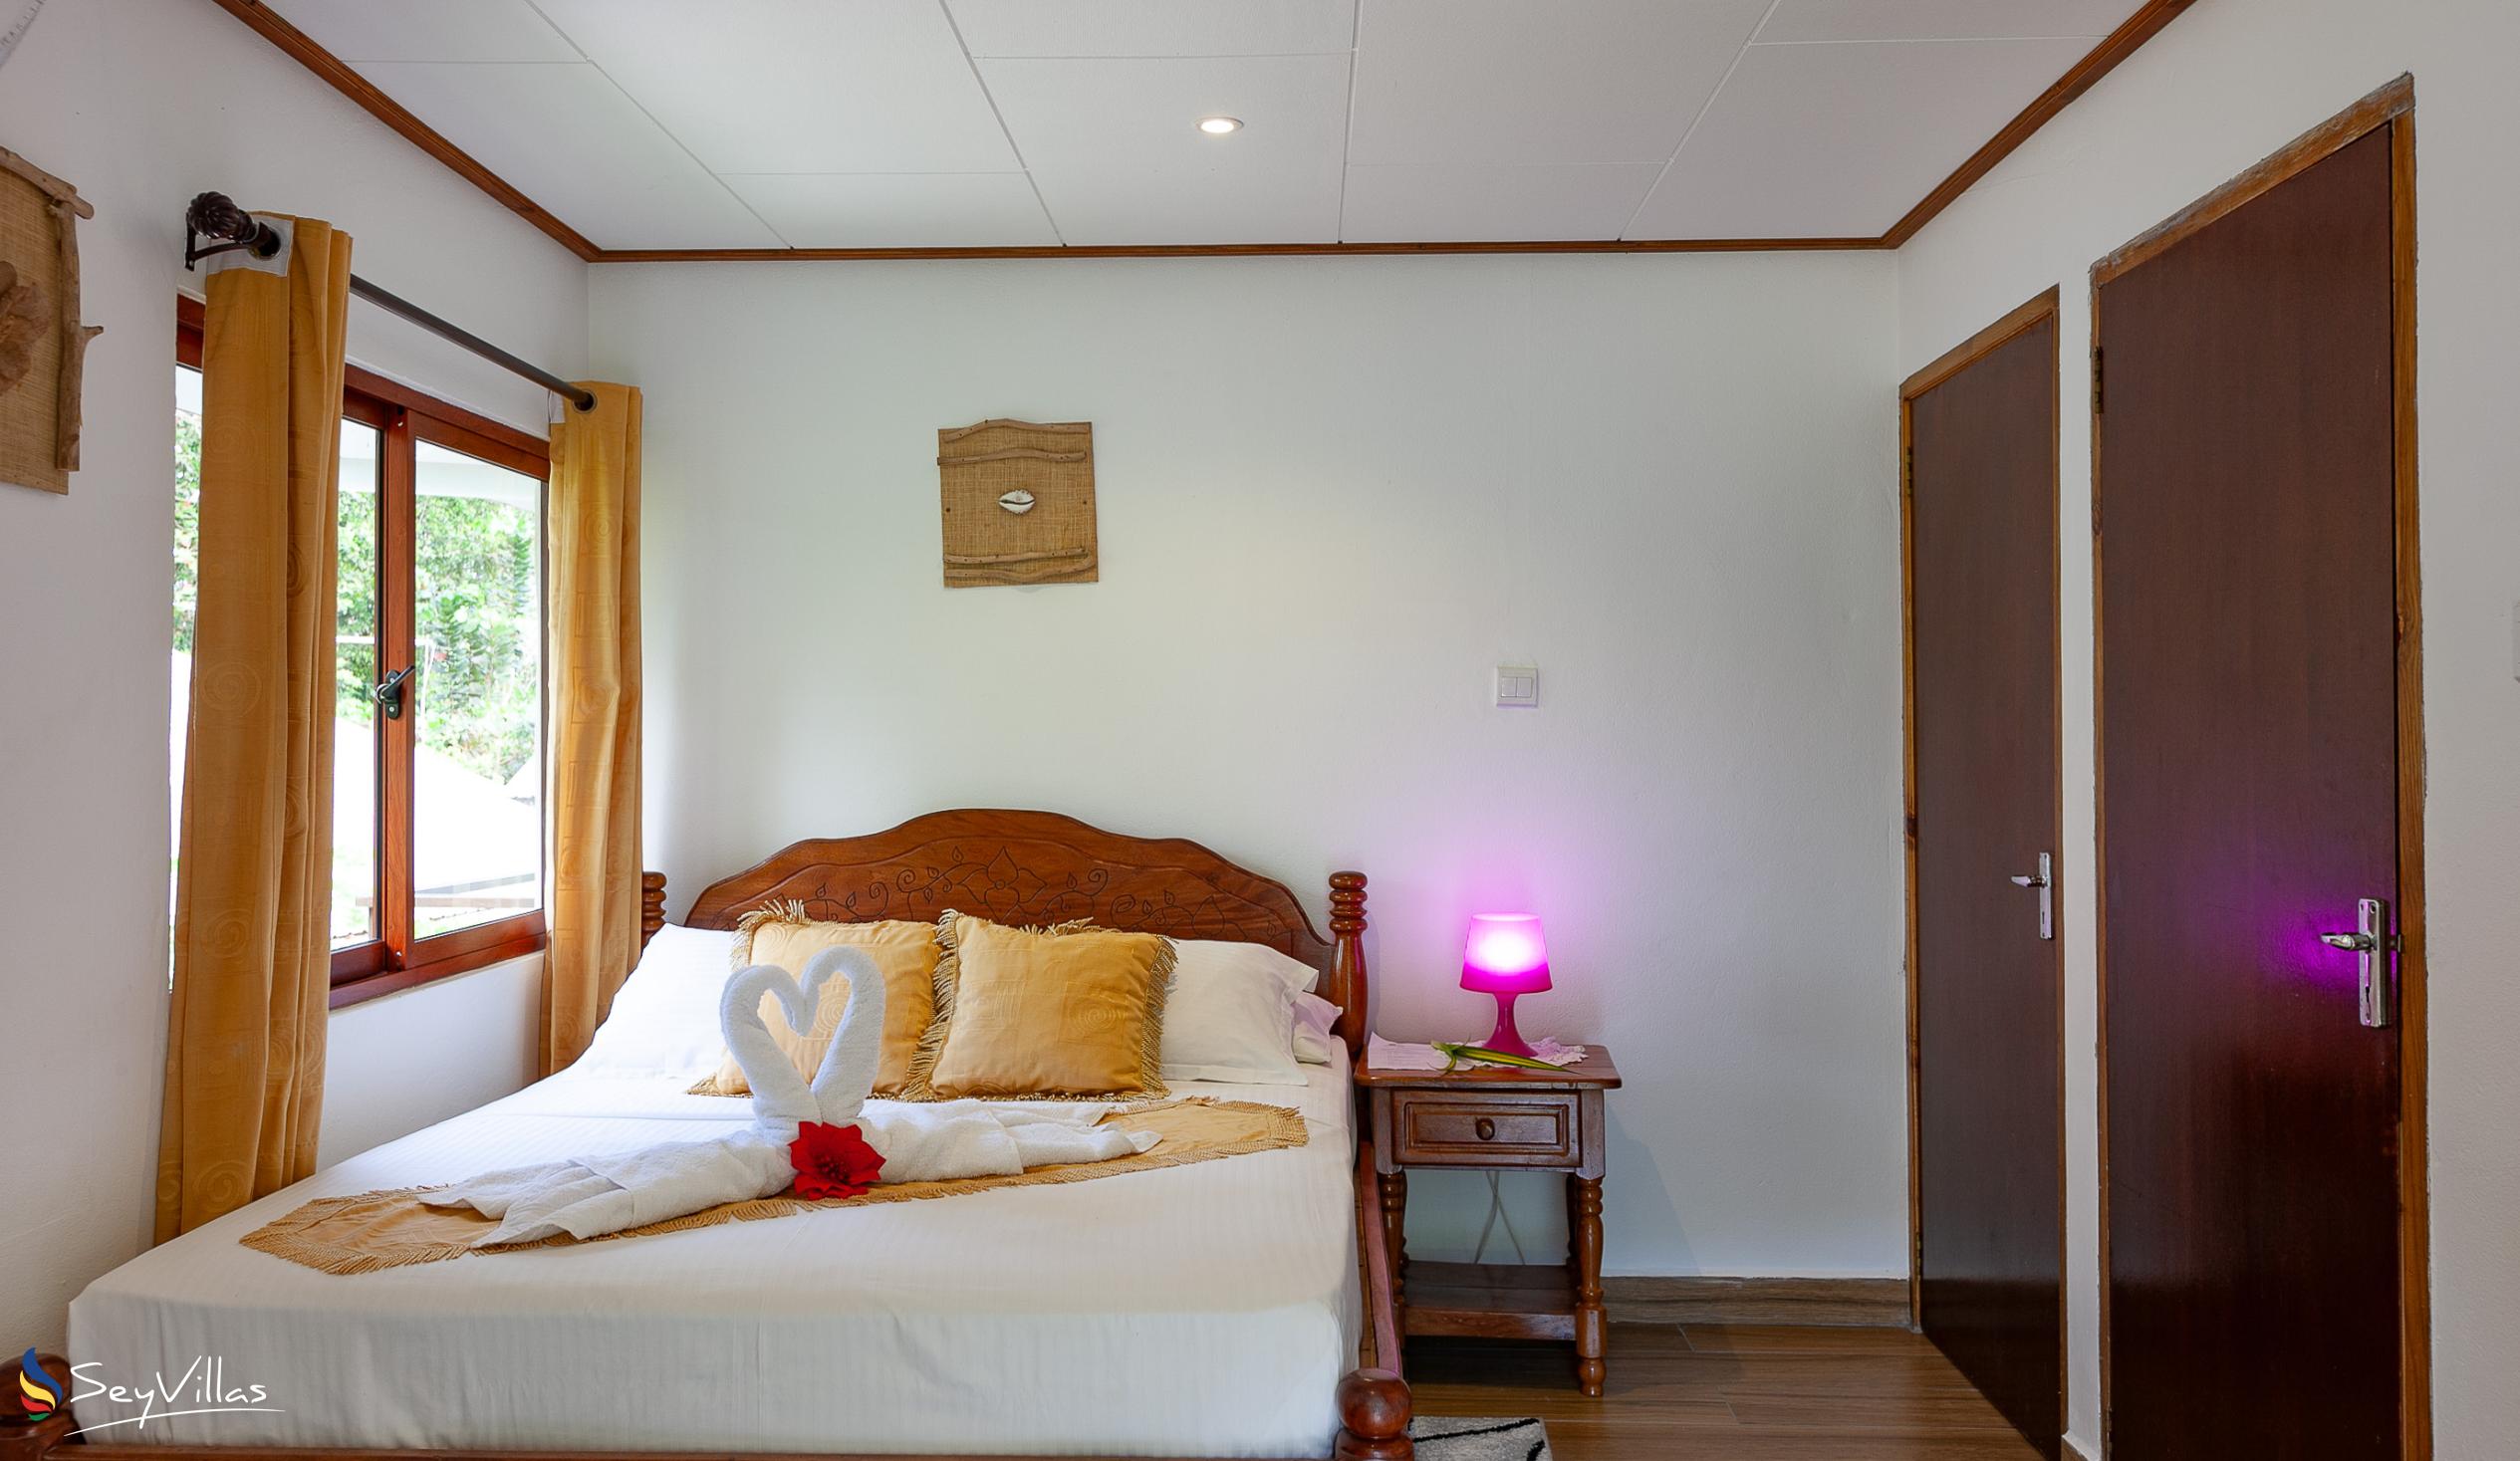 Photo 101: Tannette's Villa - Deluxe Room - La Digue (Seychelles)